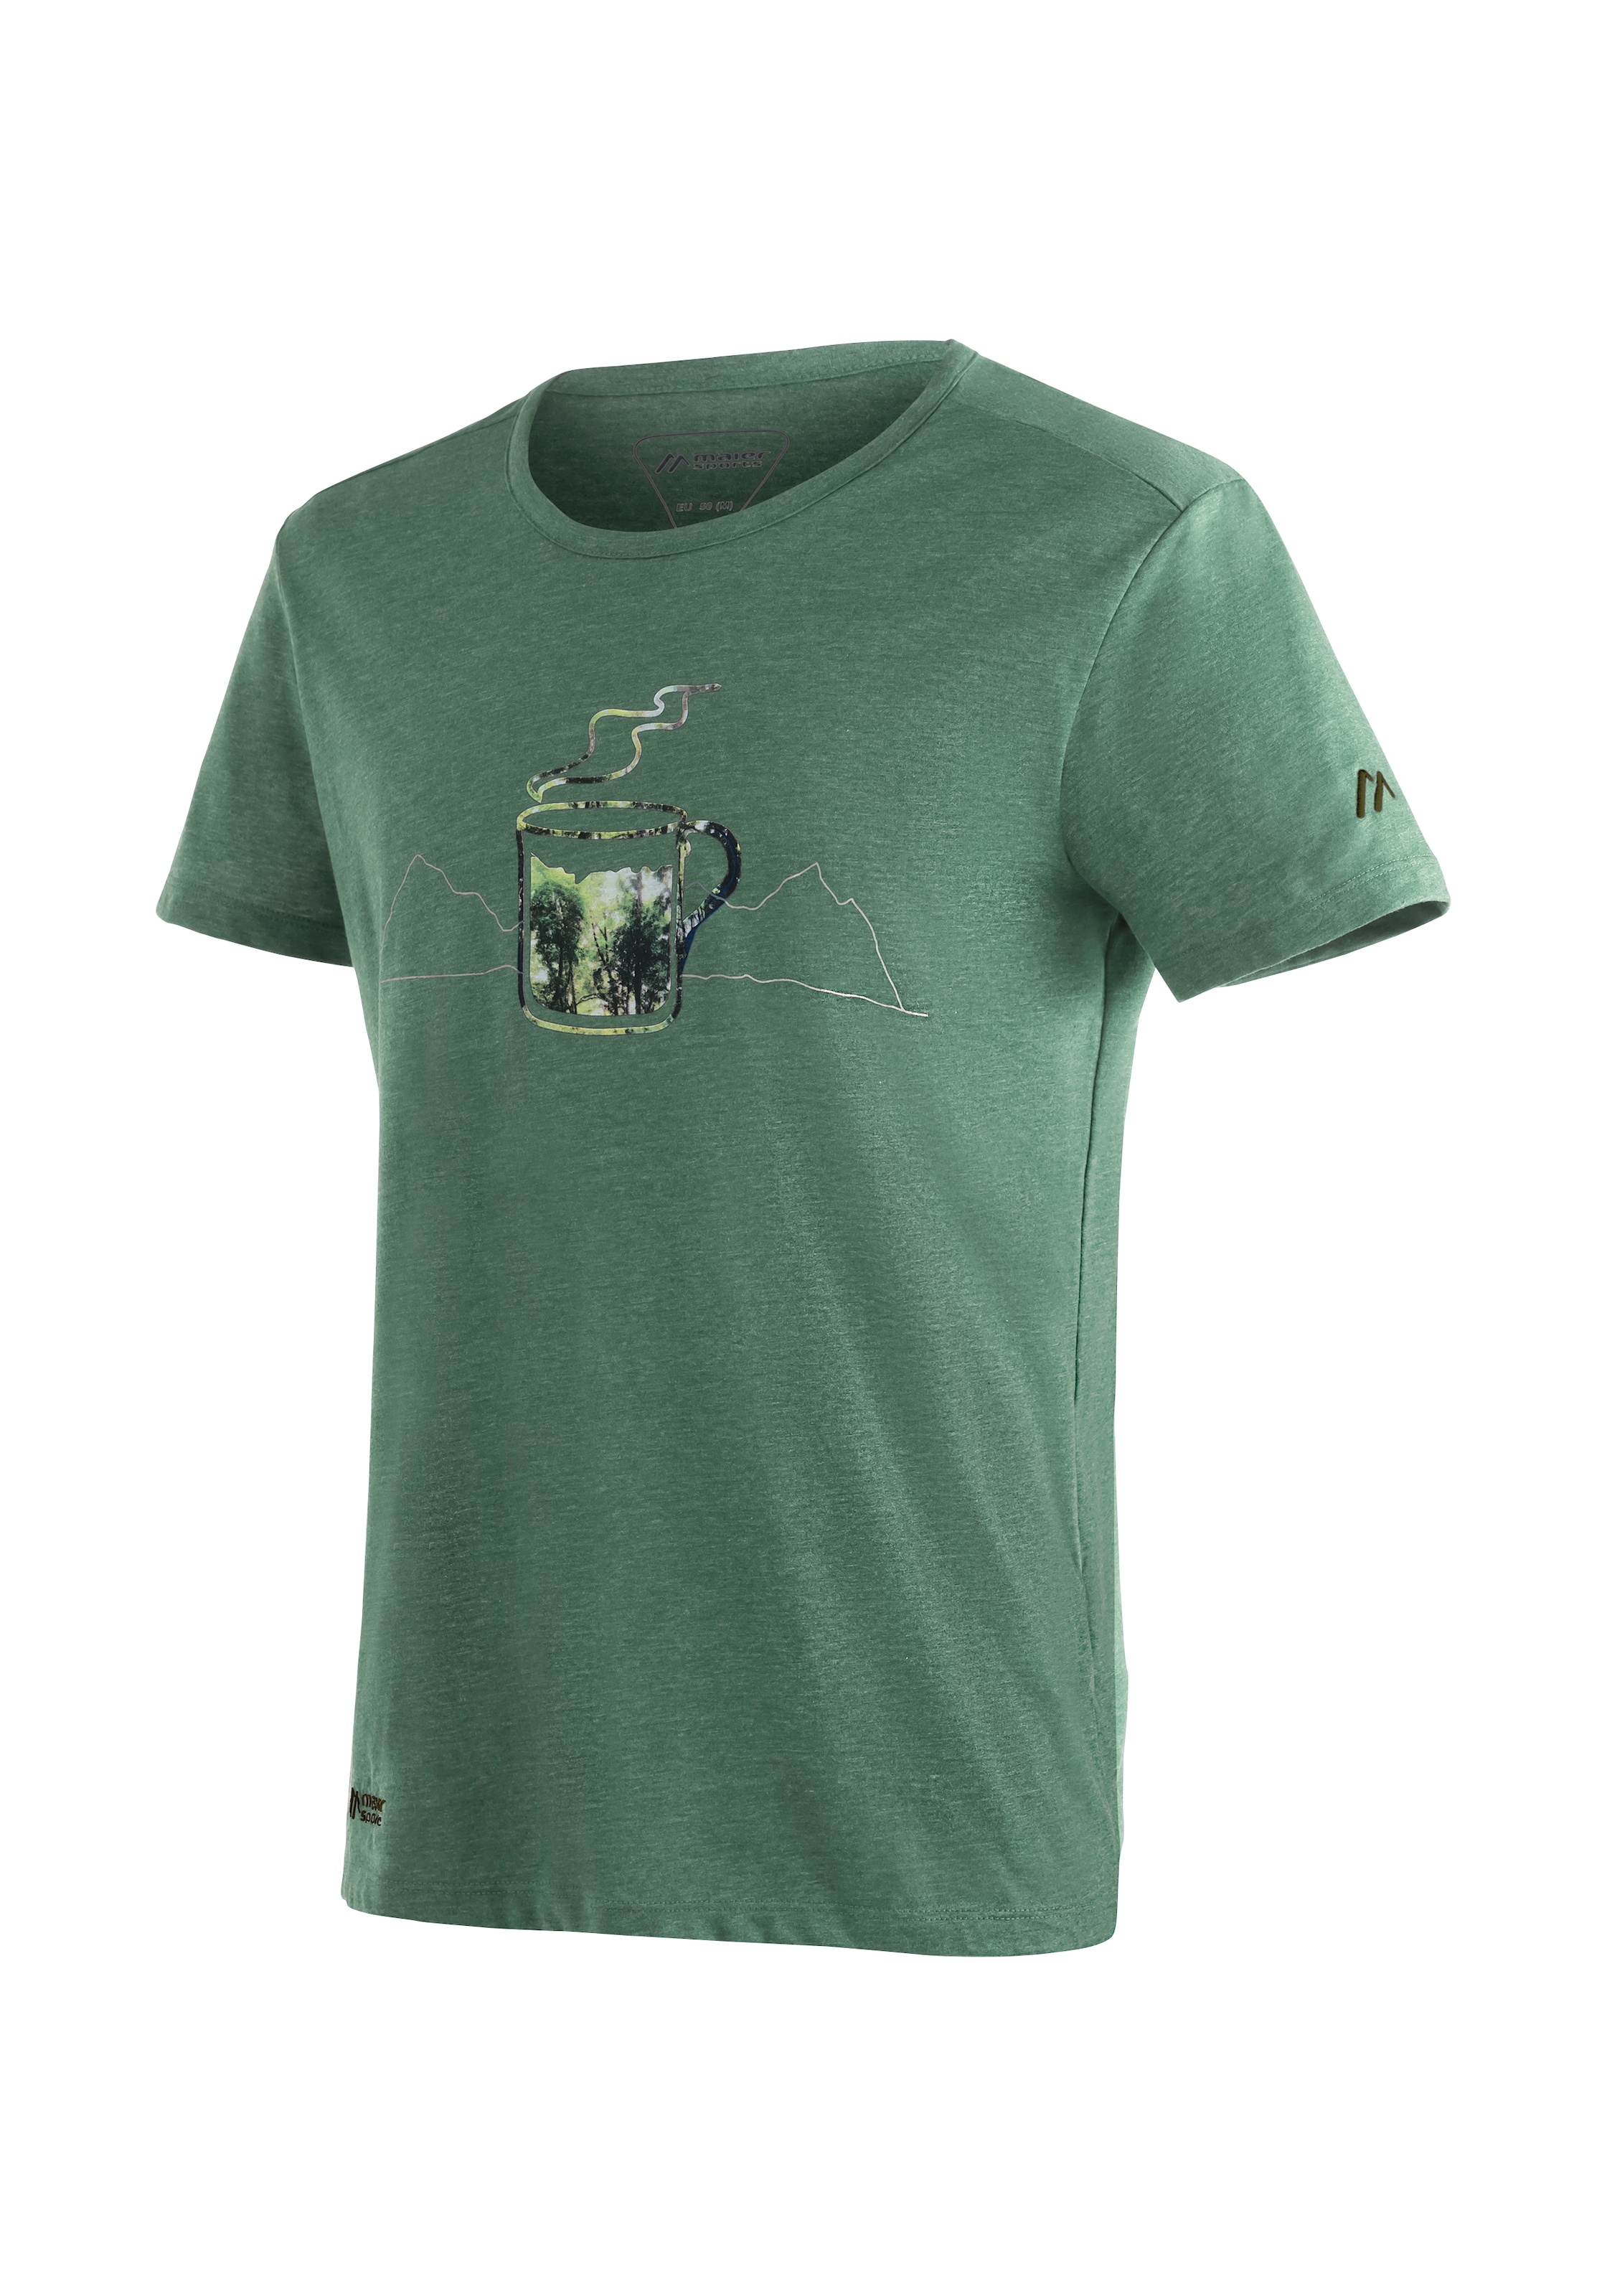 Funktionsshirt »Coffee Break M«, Vielseitiges T-Shirt in ansprechender Melange-Optik